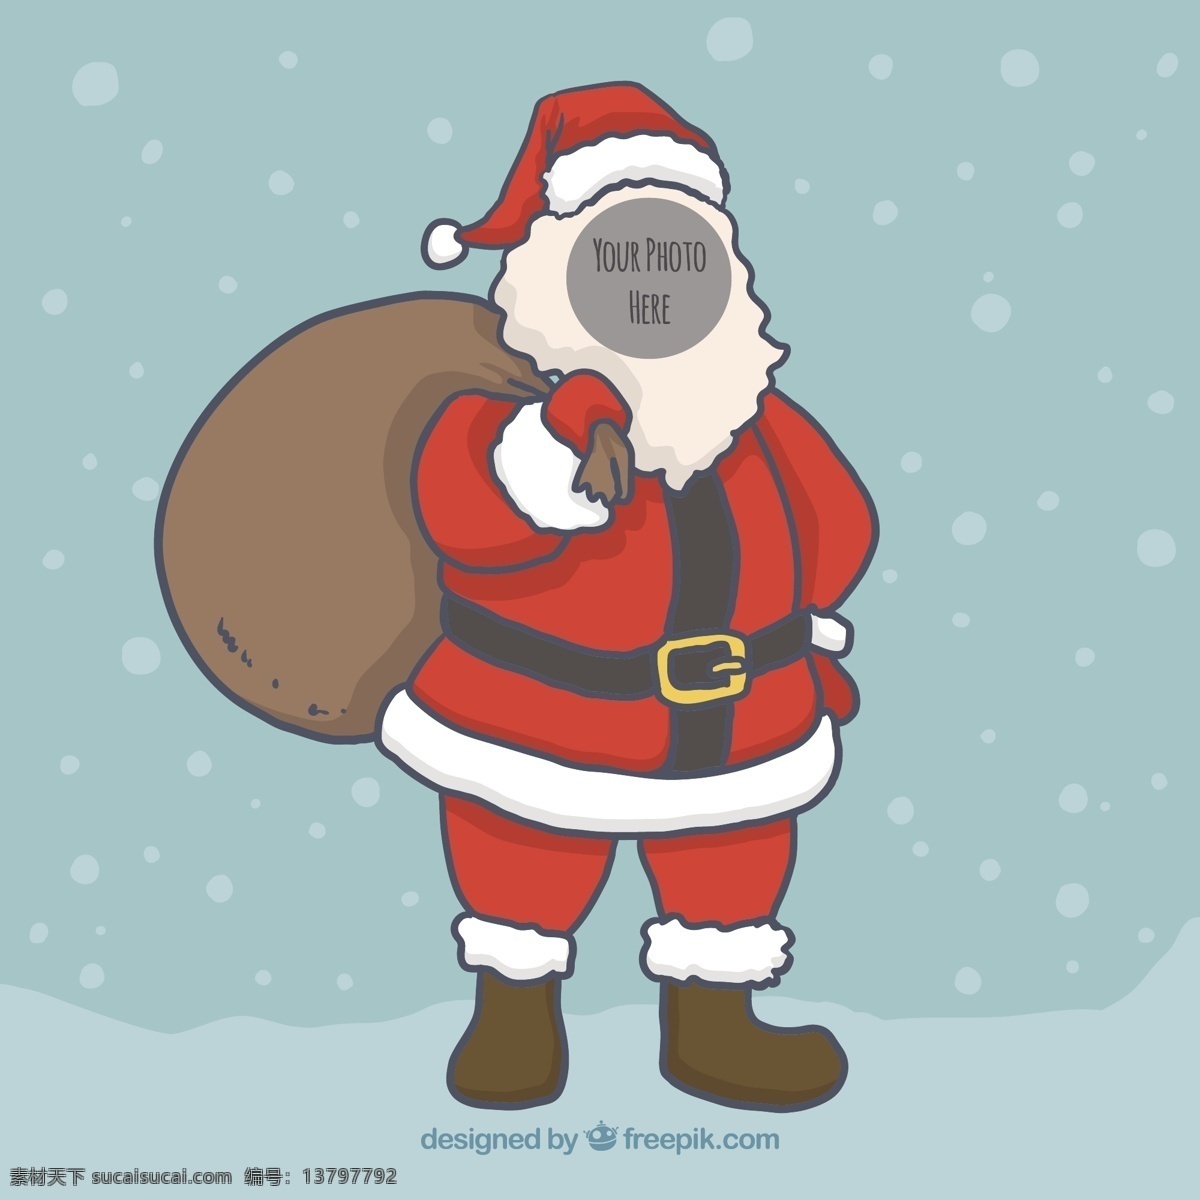 圣 克劳斯 模板 圣诞节 一方面 圣诞快乐 冬天 照片 手绘 快乐 圣克劳斯 圣诞老人 庆典 节日 绘画 节日快乐 插图 绘制 青色 天蓝色